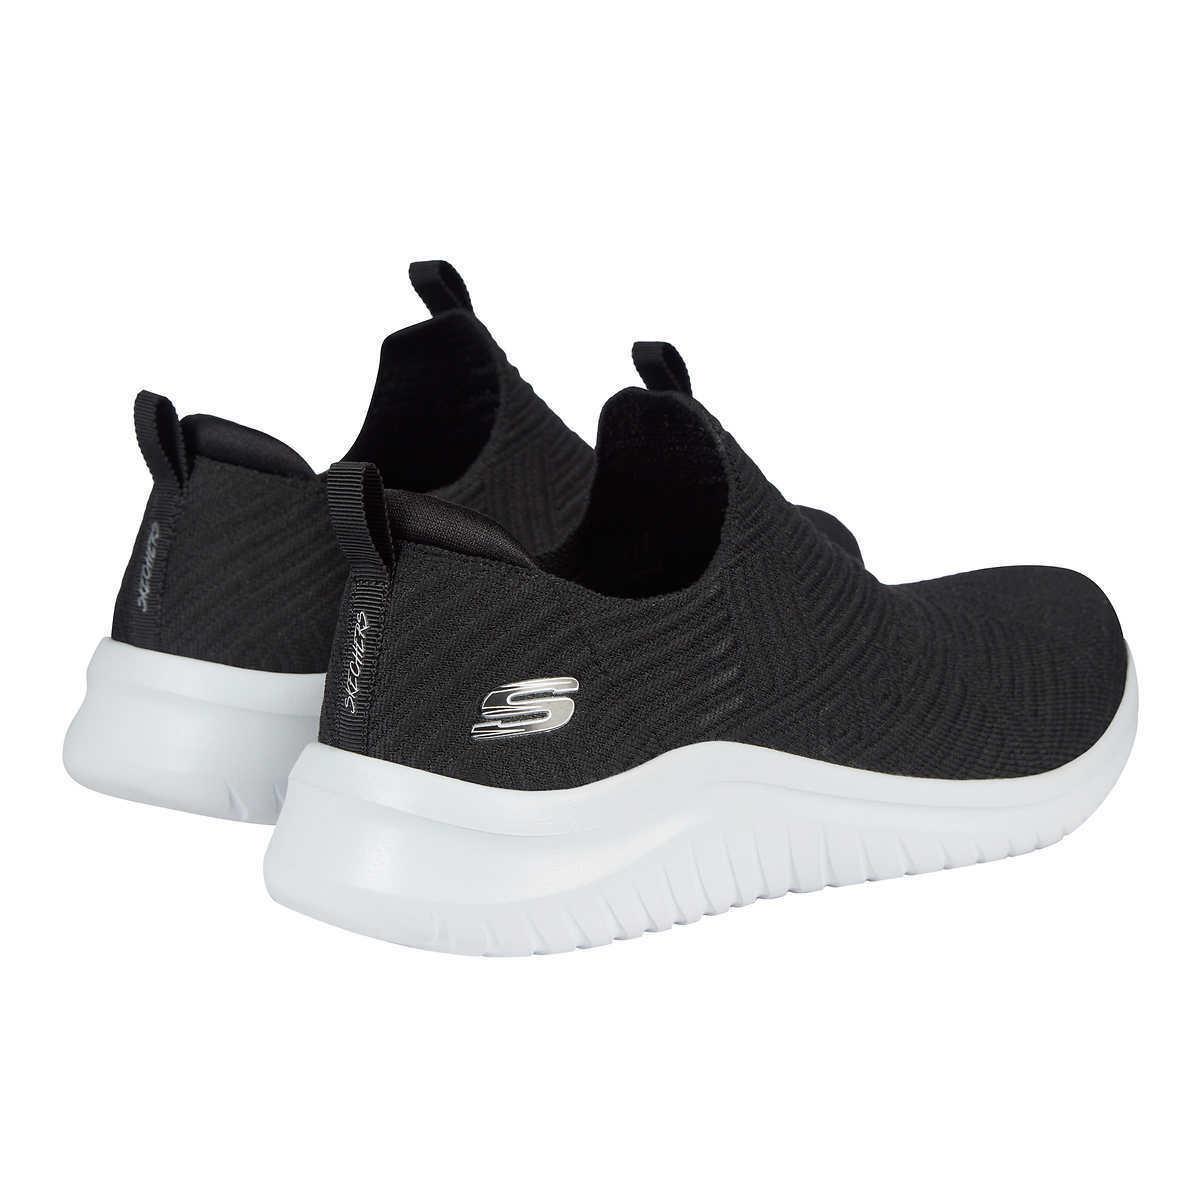 Skechers shoes Ultra Comfort 5